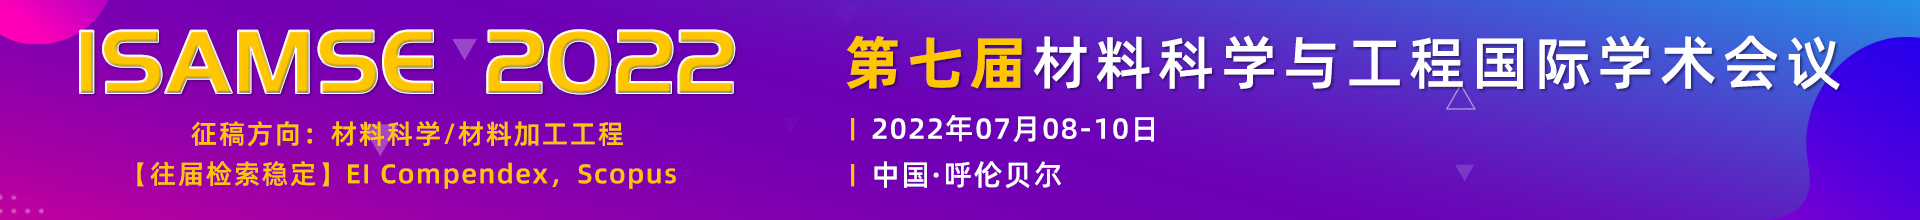 7月呼伦贝尔-ISAMSE-2022-学术会议云PC端1920x220-陈军-陈军-20220221.jpg